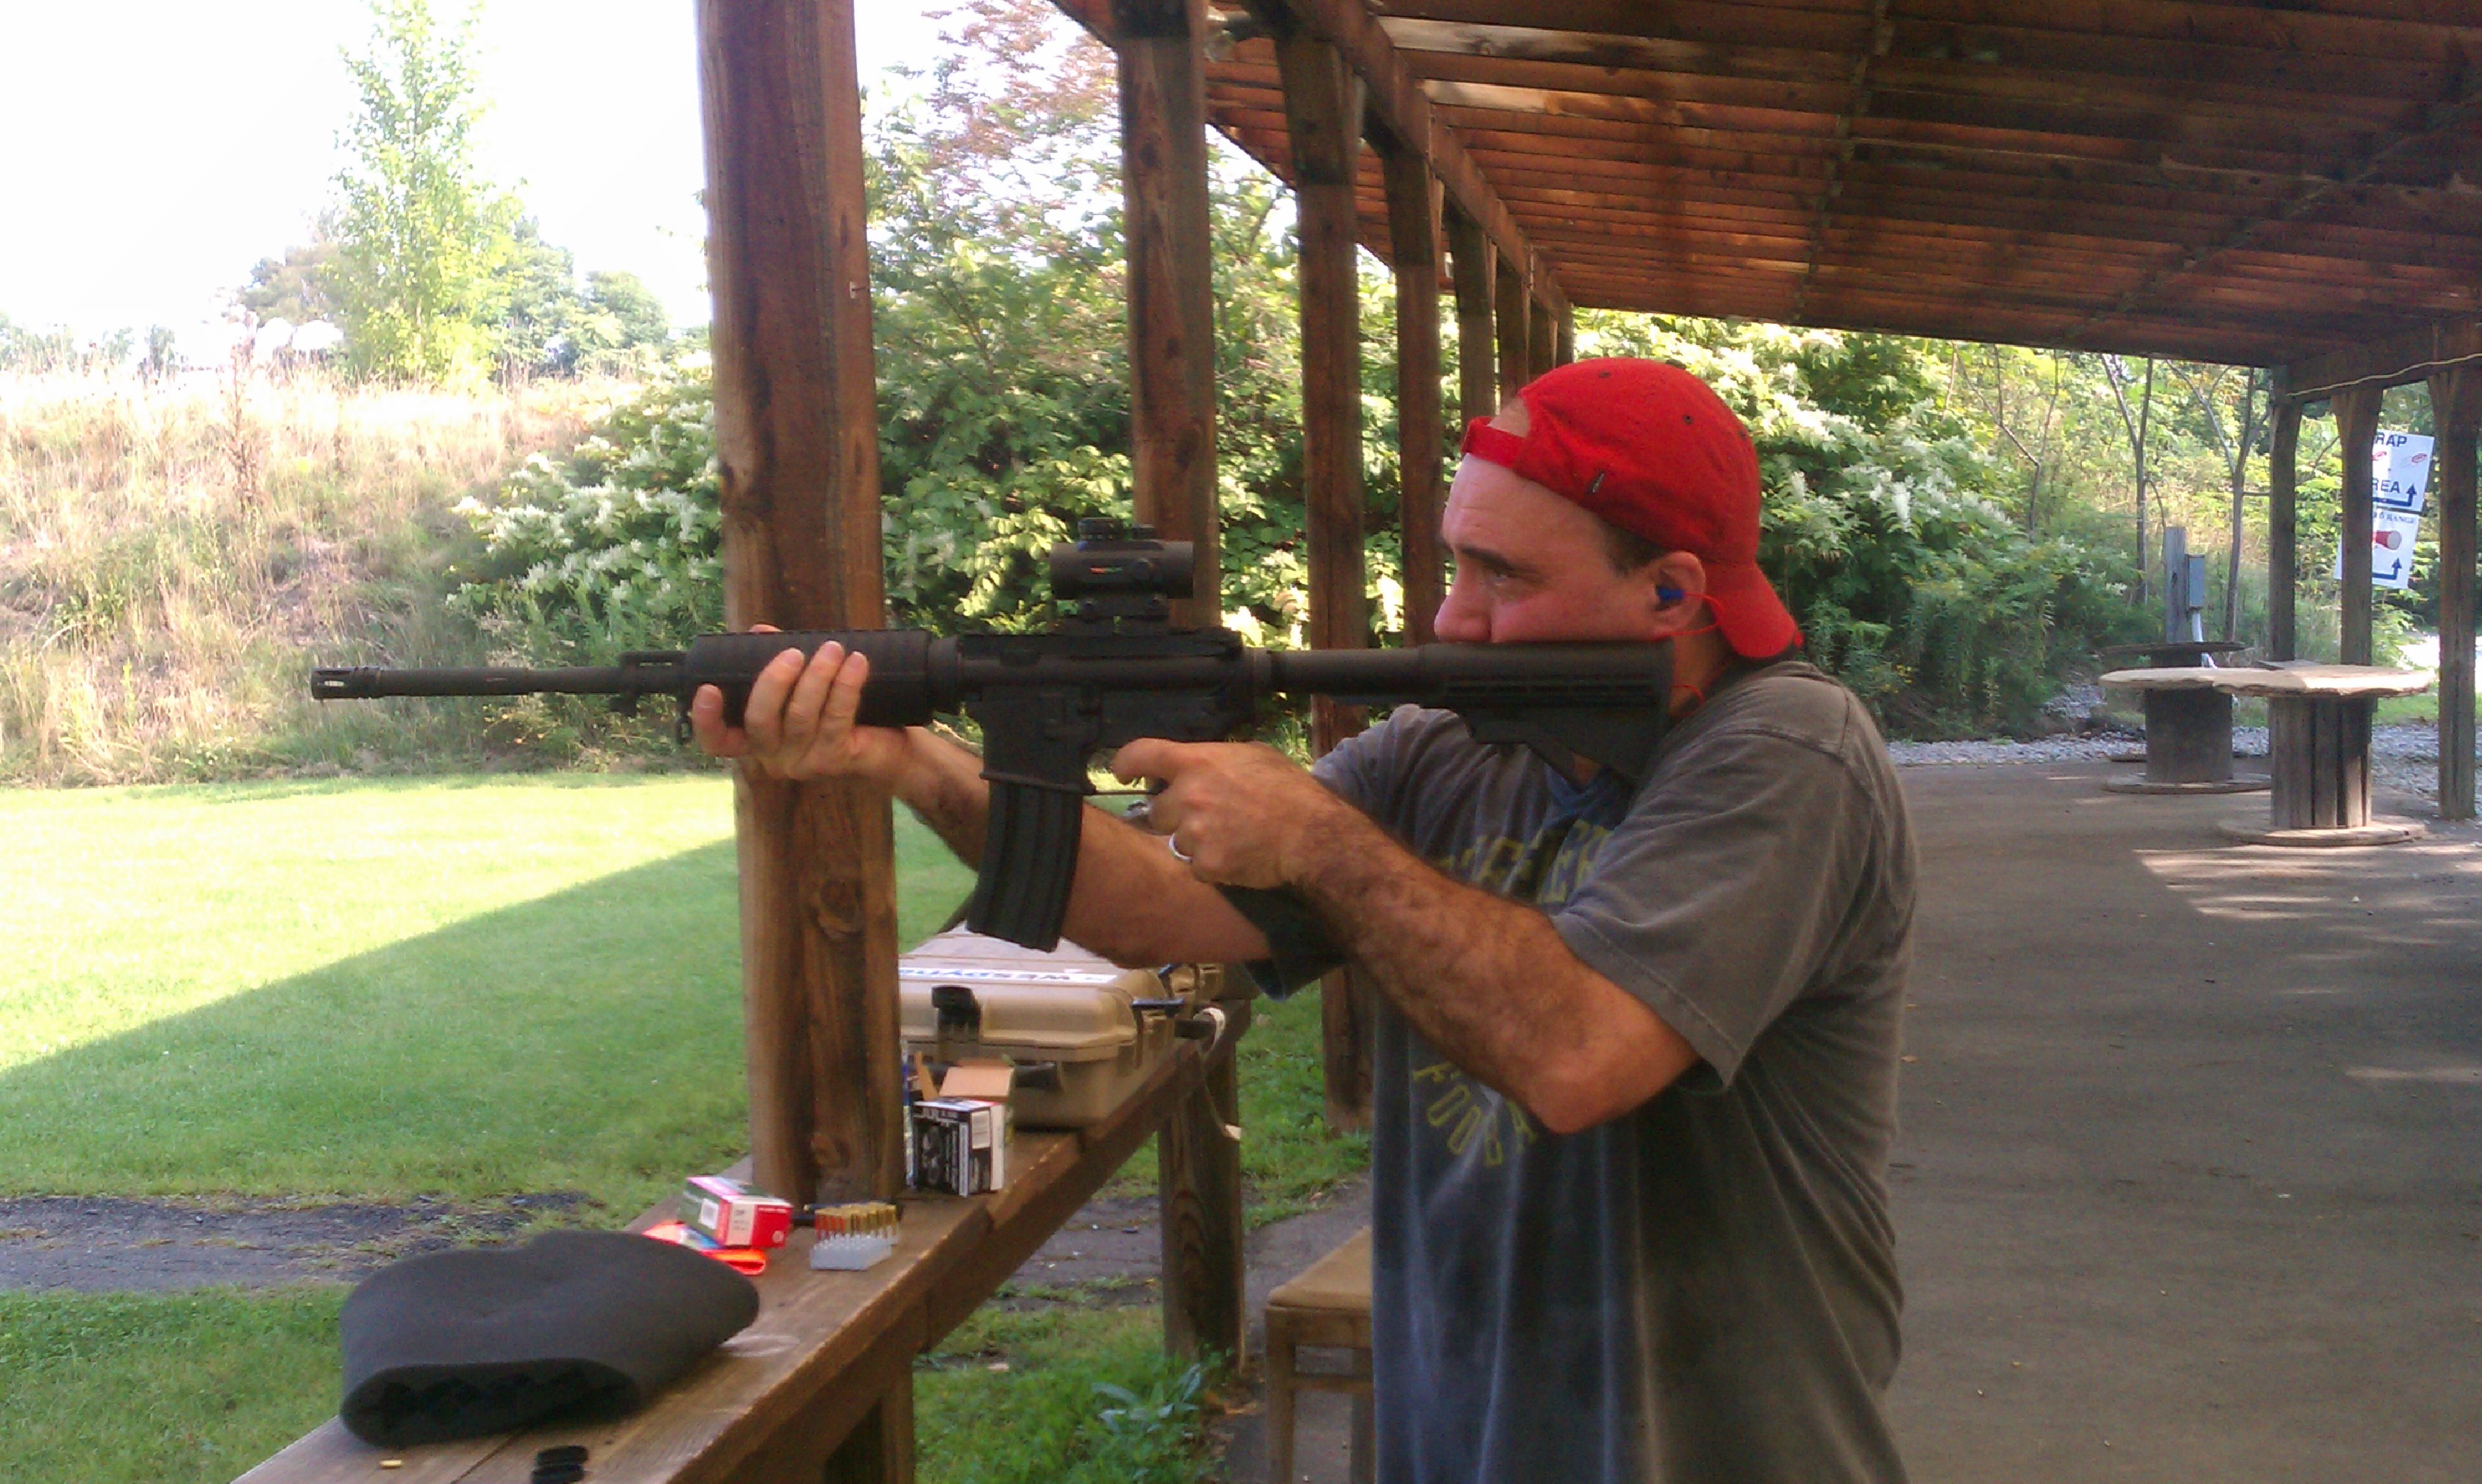 On the range with an AR 15 rifle.